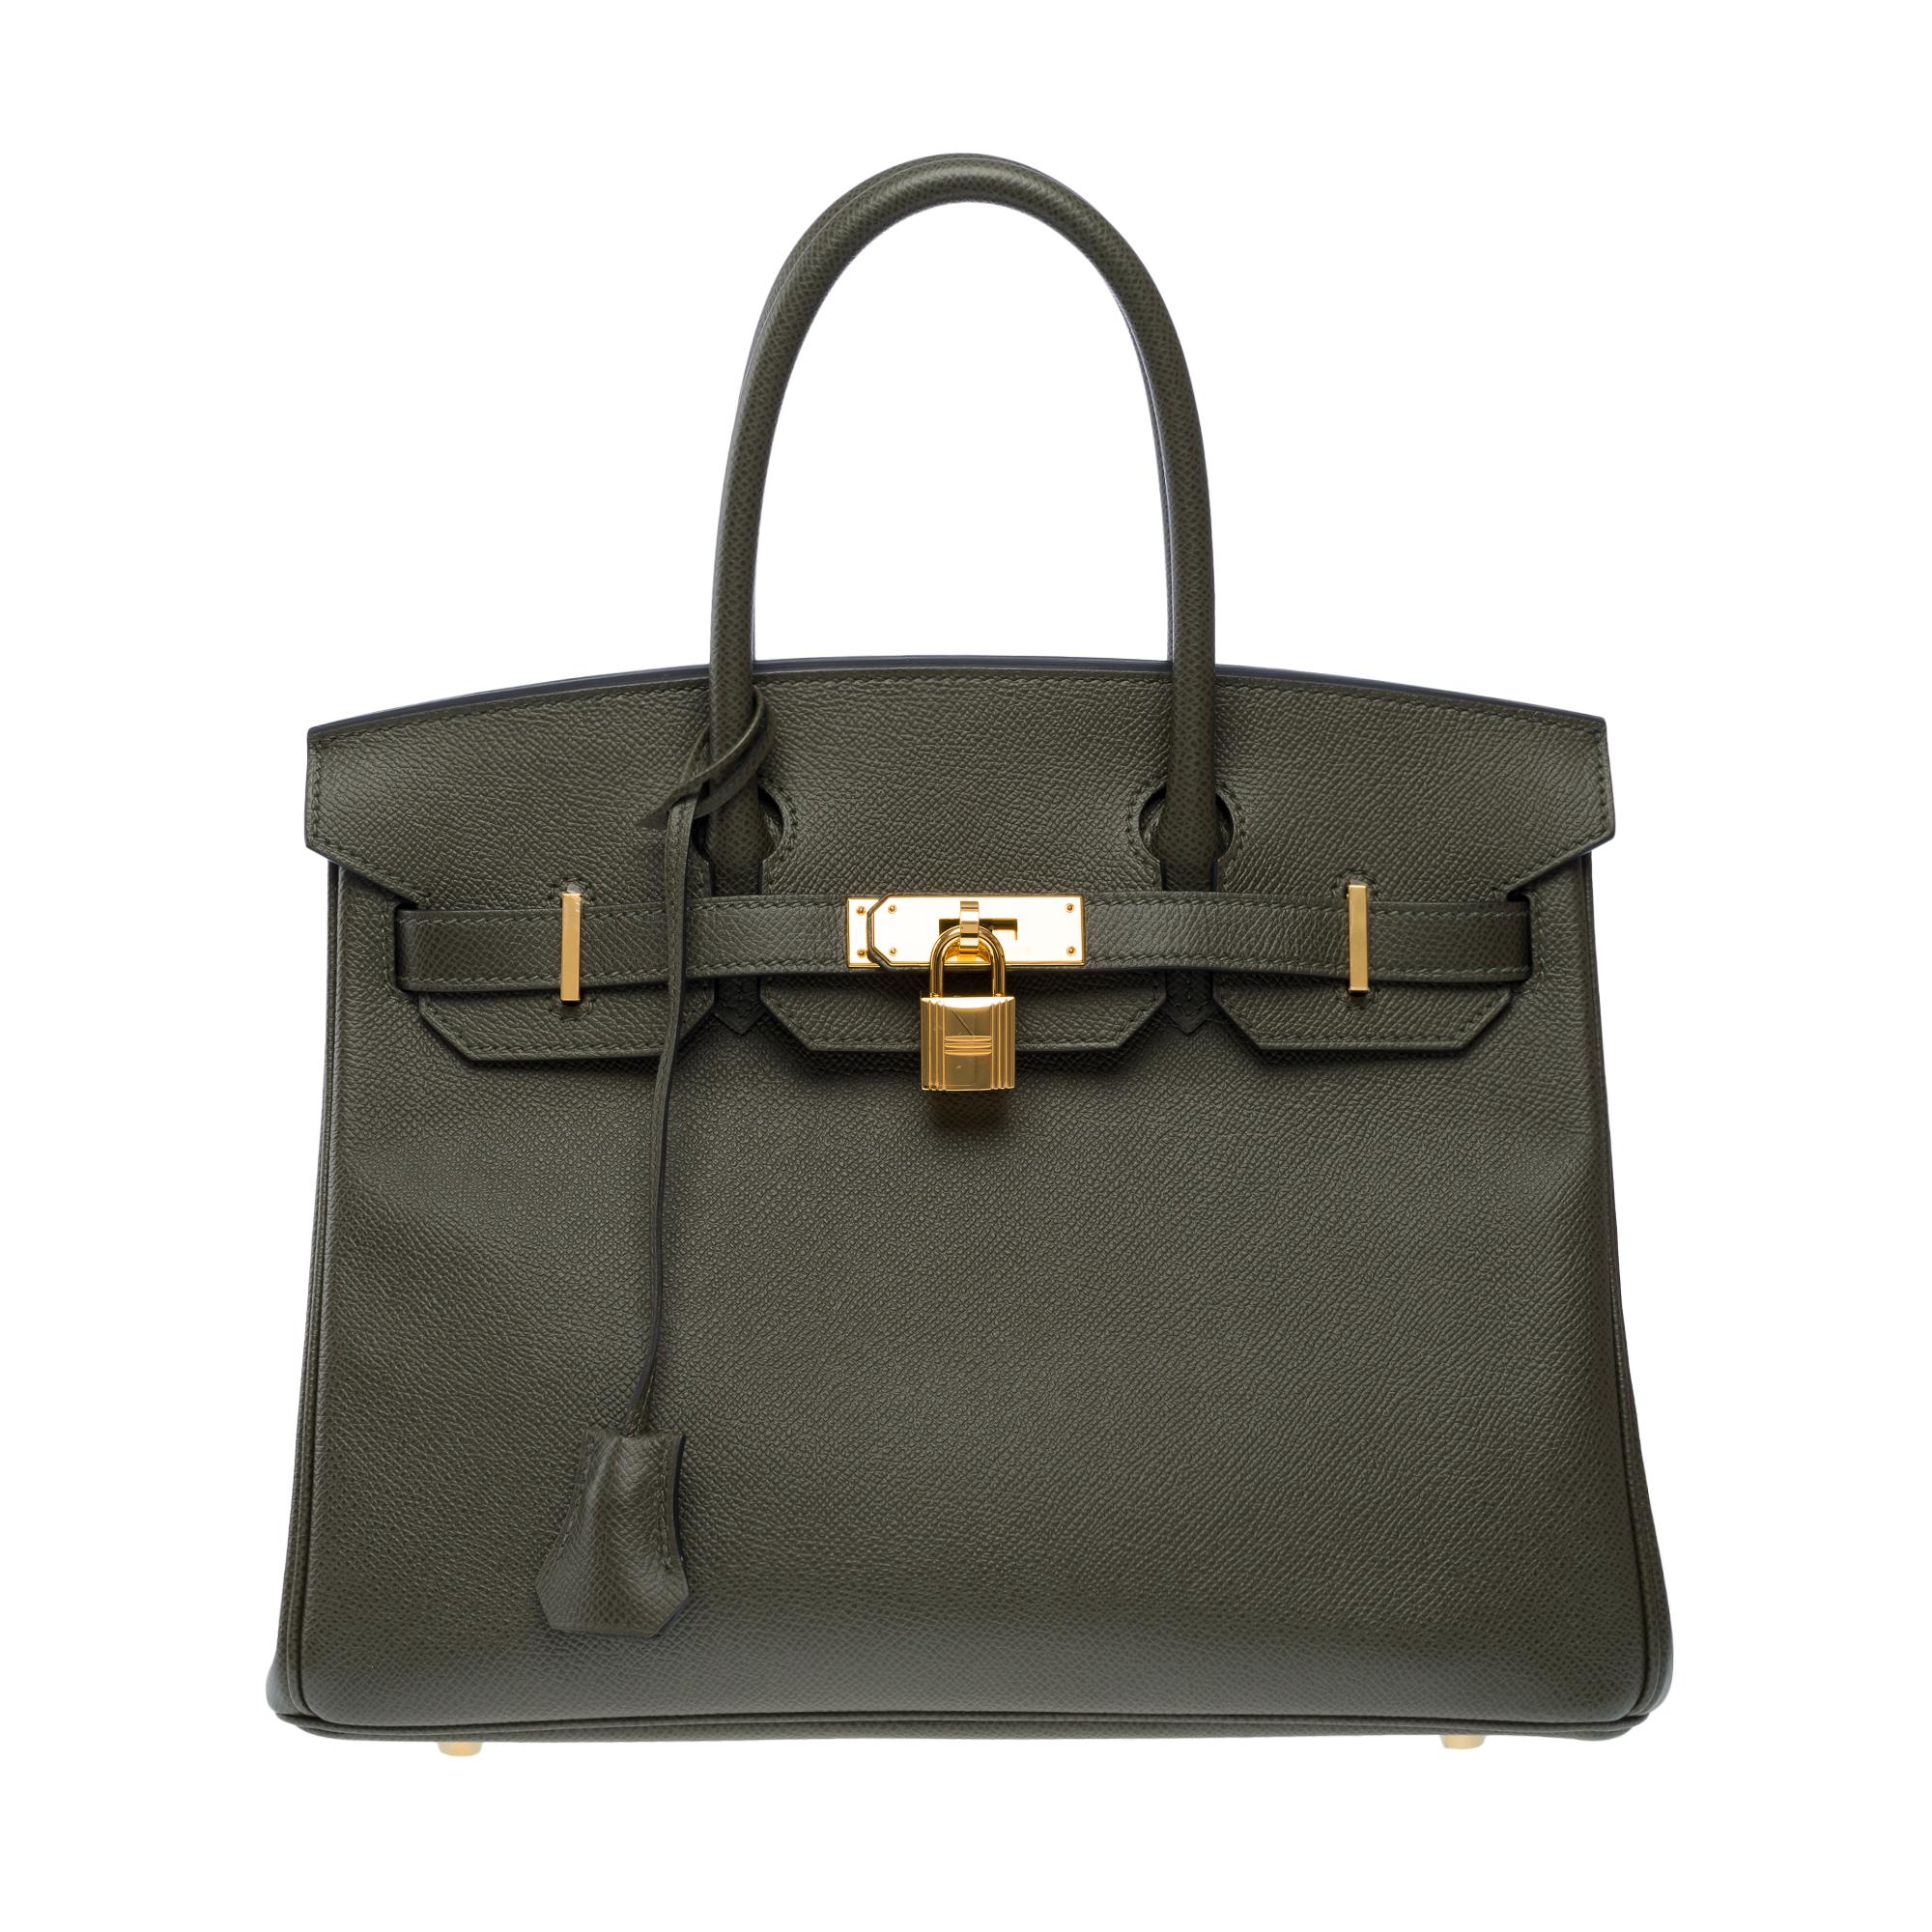 Gray Splendid Hermes Birkin 30 handbag in Vert de Gris Epsom leather, SHW For Sale